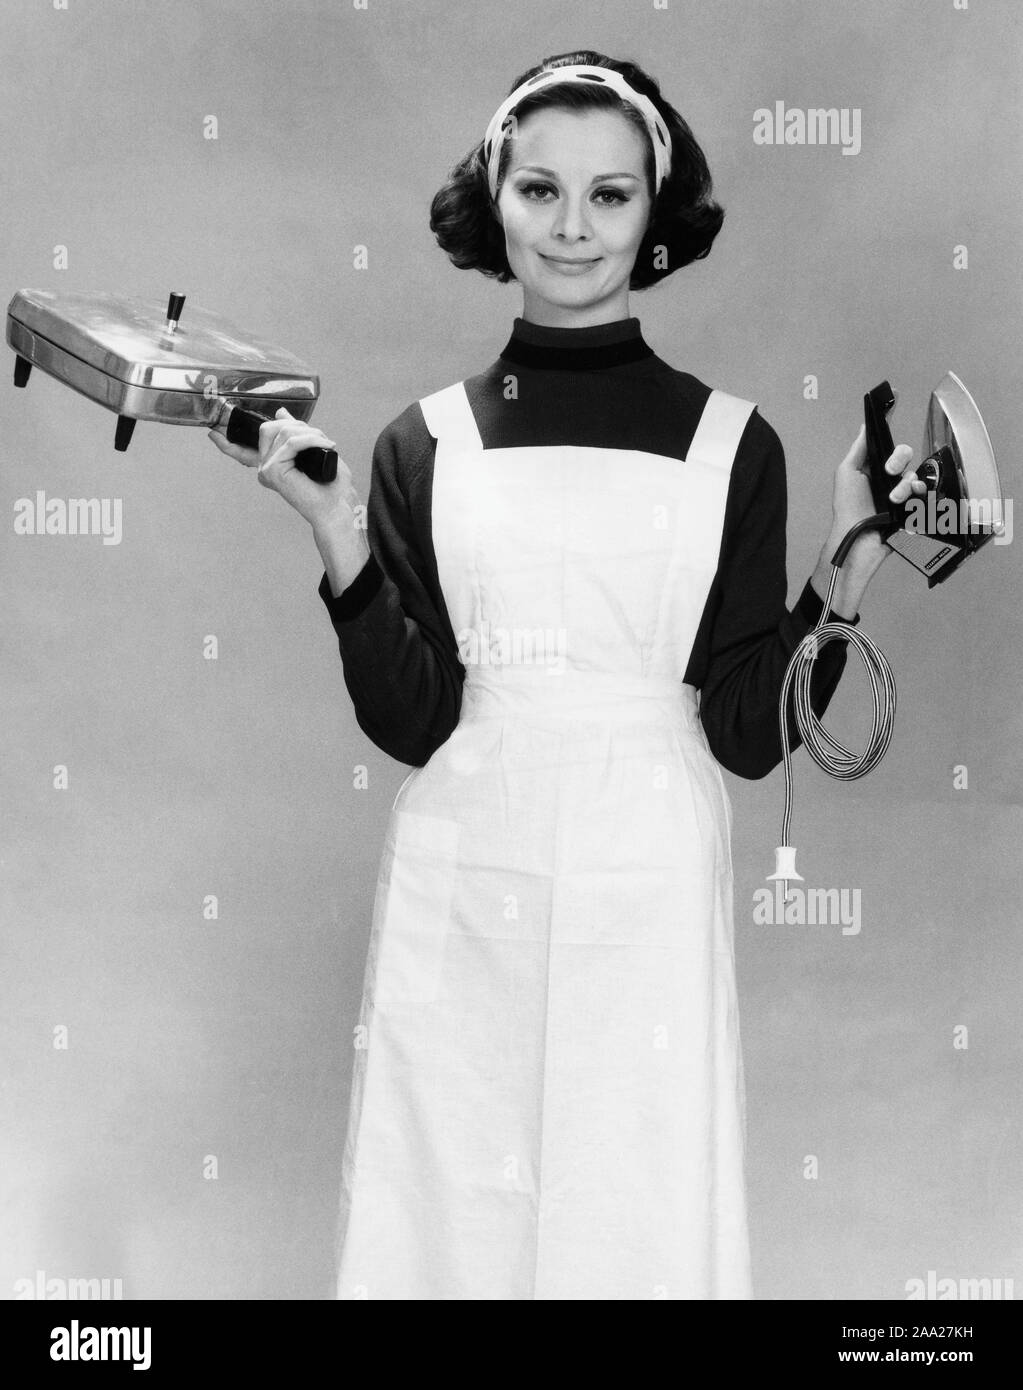 Dans les années 60. Une jeune femme tient un fer à repasser et un fer à repasser électrique fait whaffle par Elektro Helios. Suède 1963 Banque D'Images